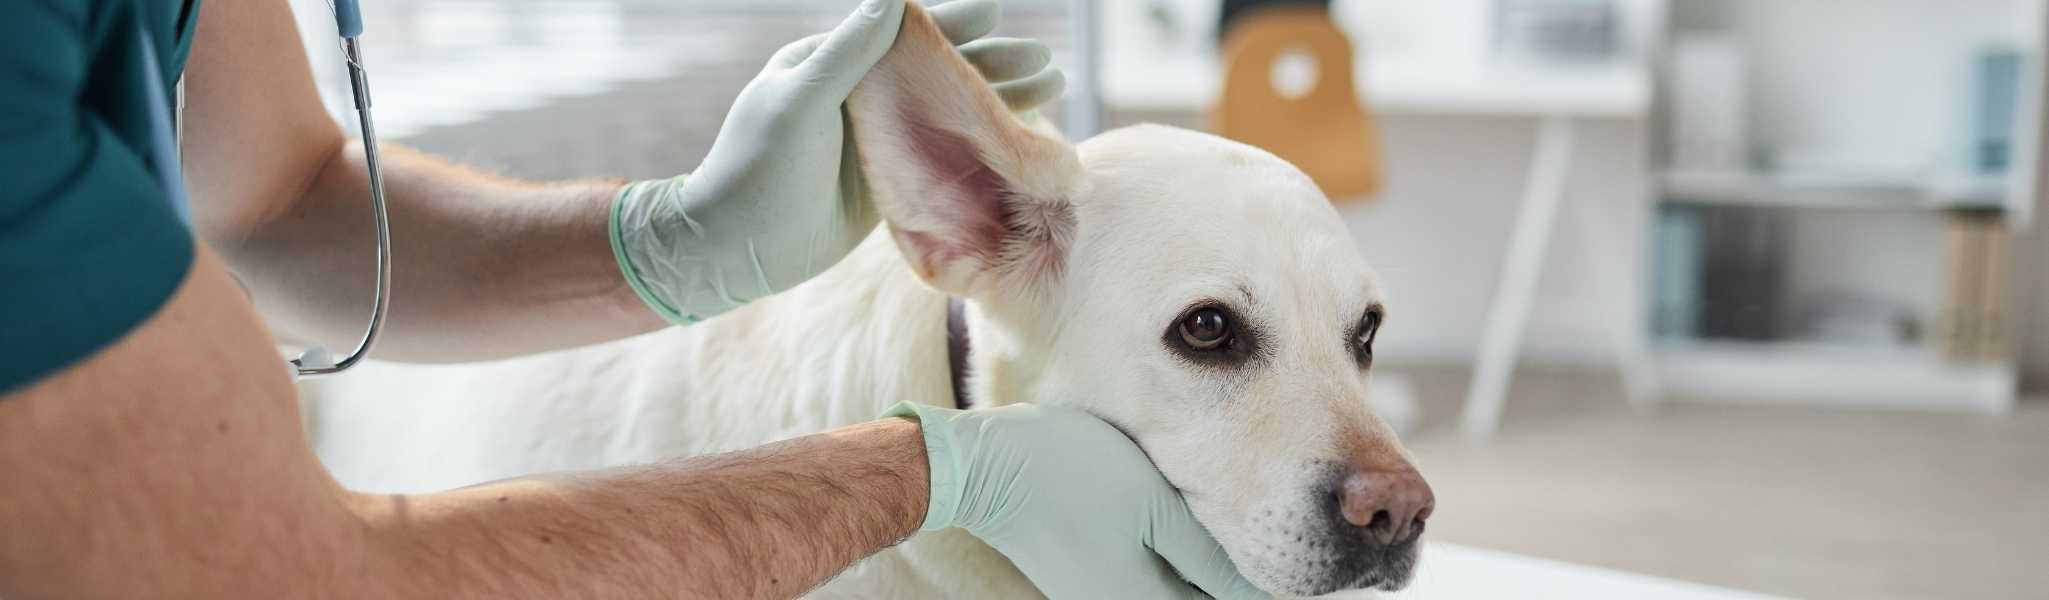 Bien nettoyer les oreilles de son chien : Comment faire ?